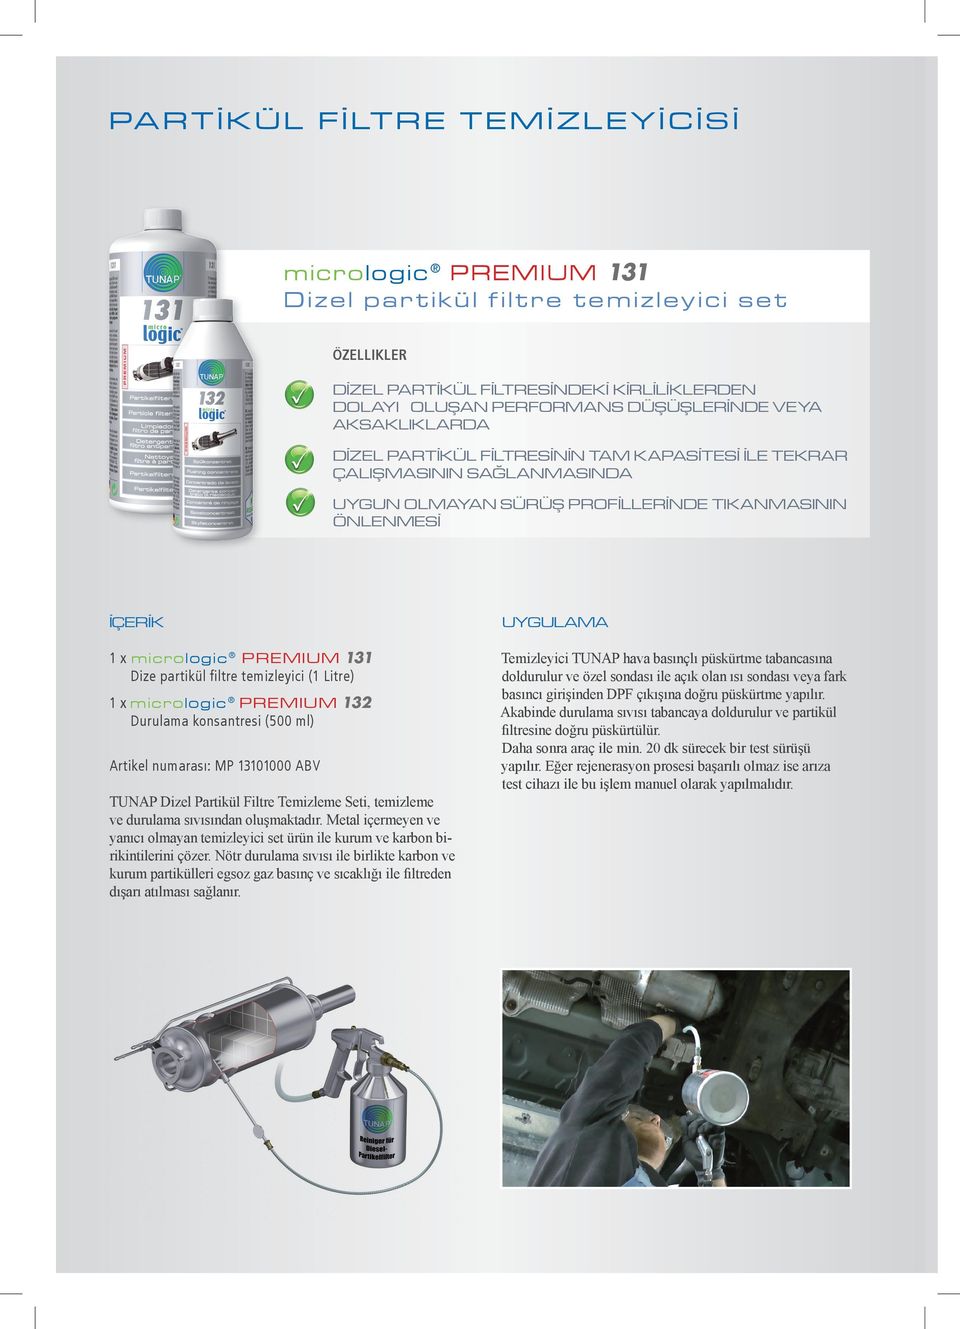 filtre temizleyici (1 Litre) 1 x micrologic Premium 132 Durulama konsantresi (500 ml) Artikel numarası: 13101000 ABV TUNAP Dizel Partikül Filtre Temizleme Seti, temizleme ve durulama sıvısından